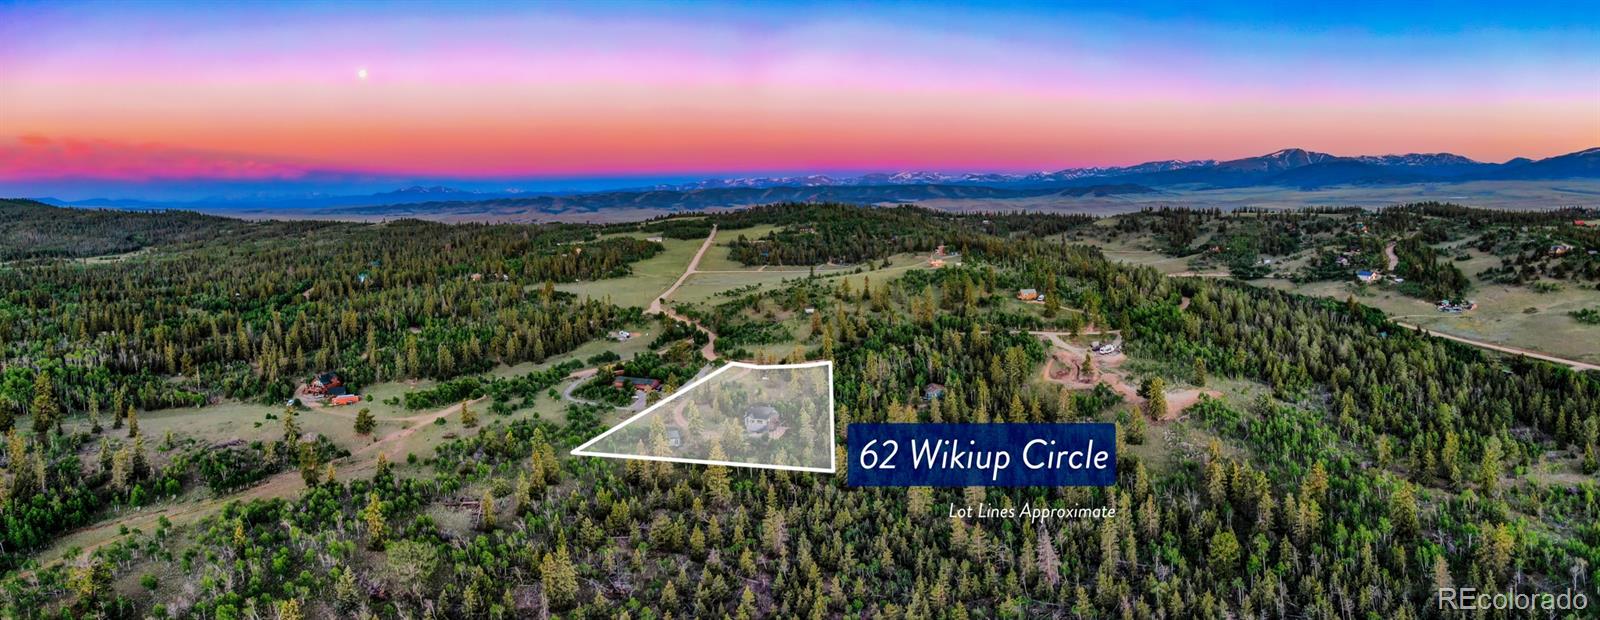 MLS Image #36 for 62  wikiup circle,como, Colorado